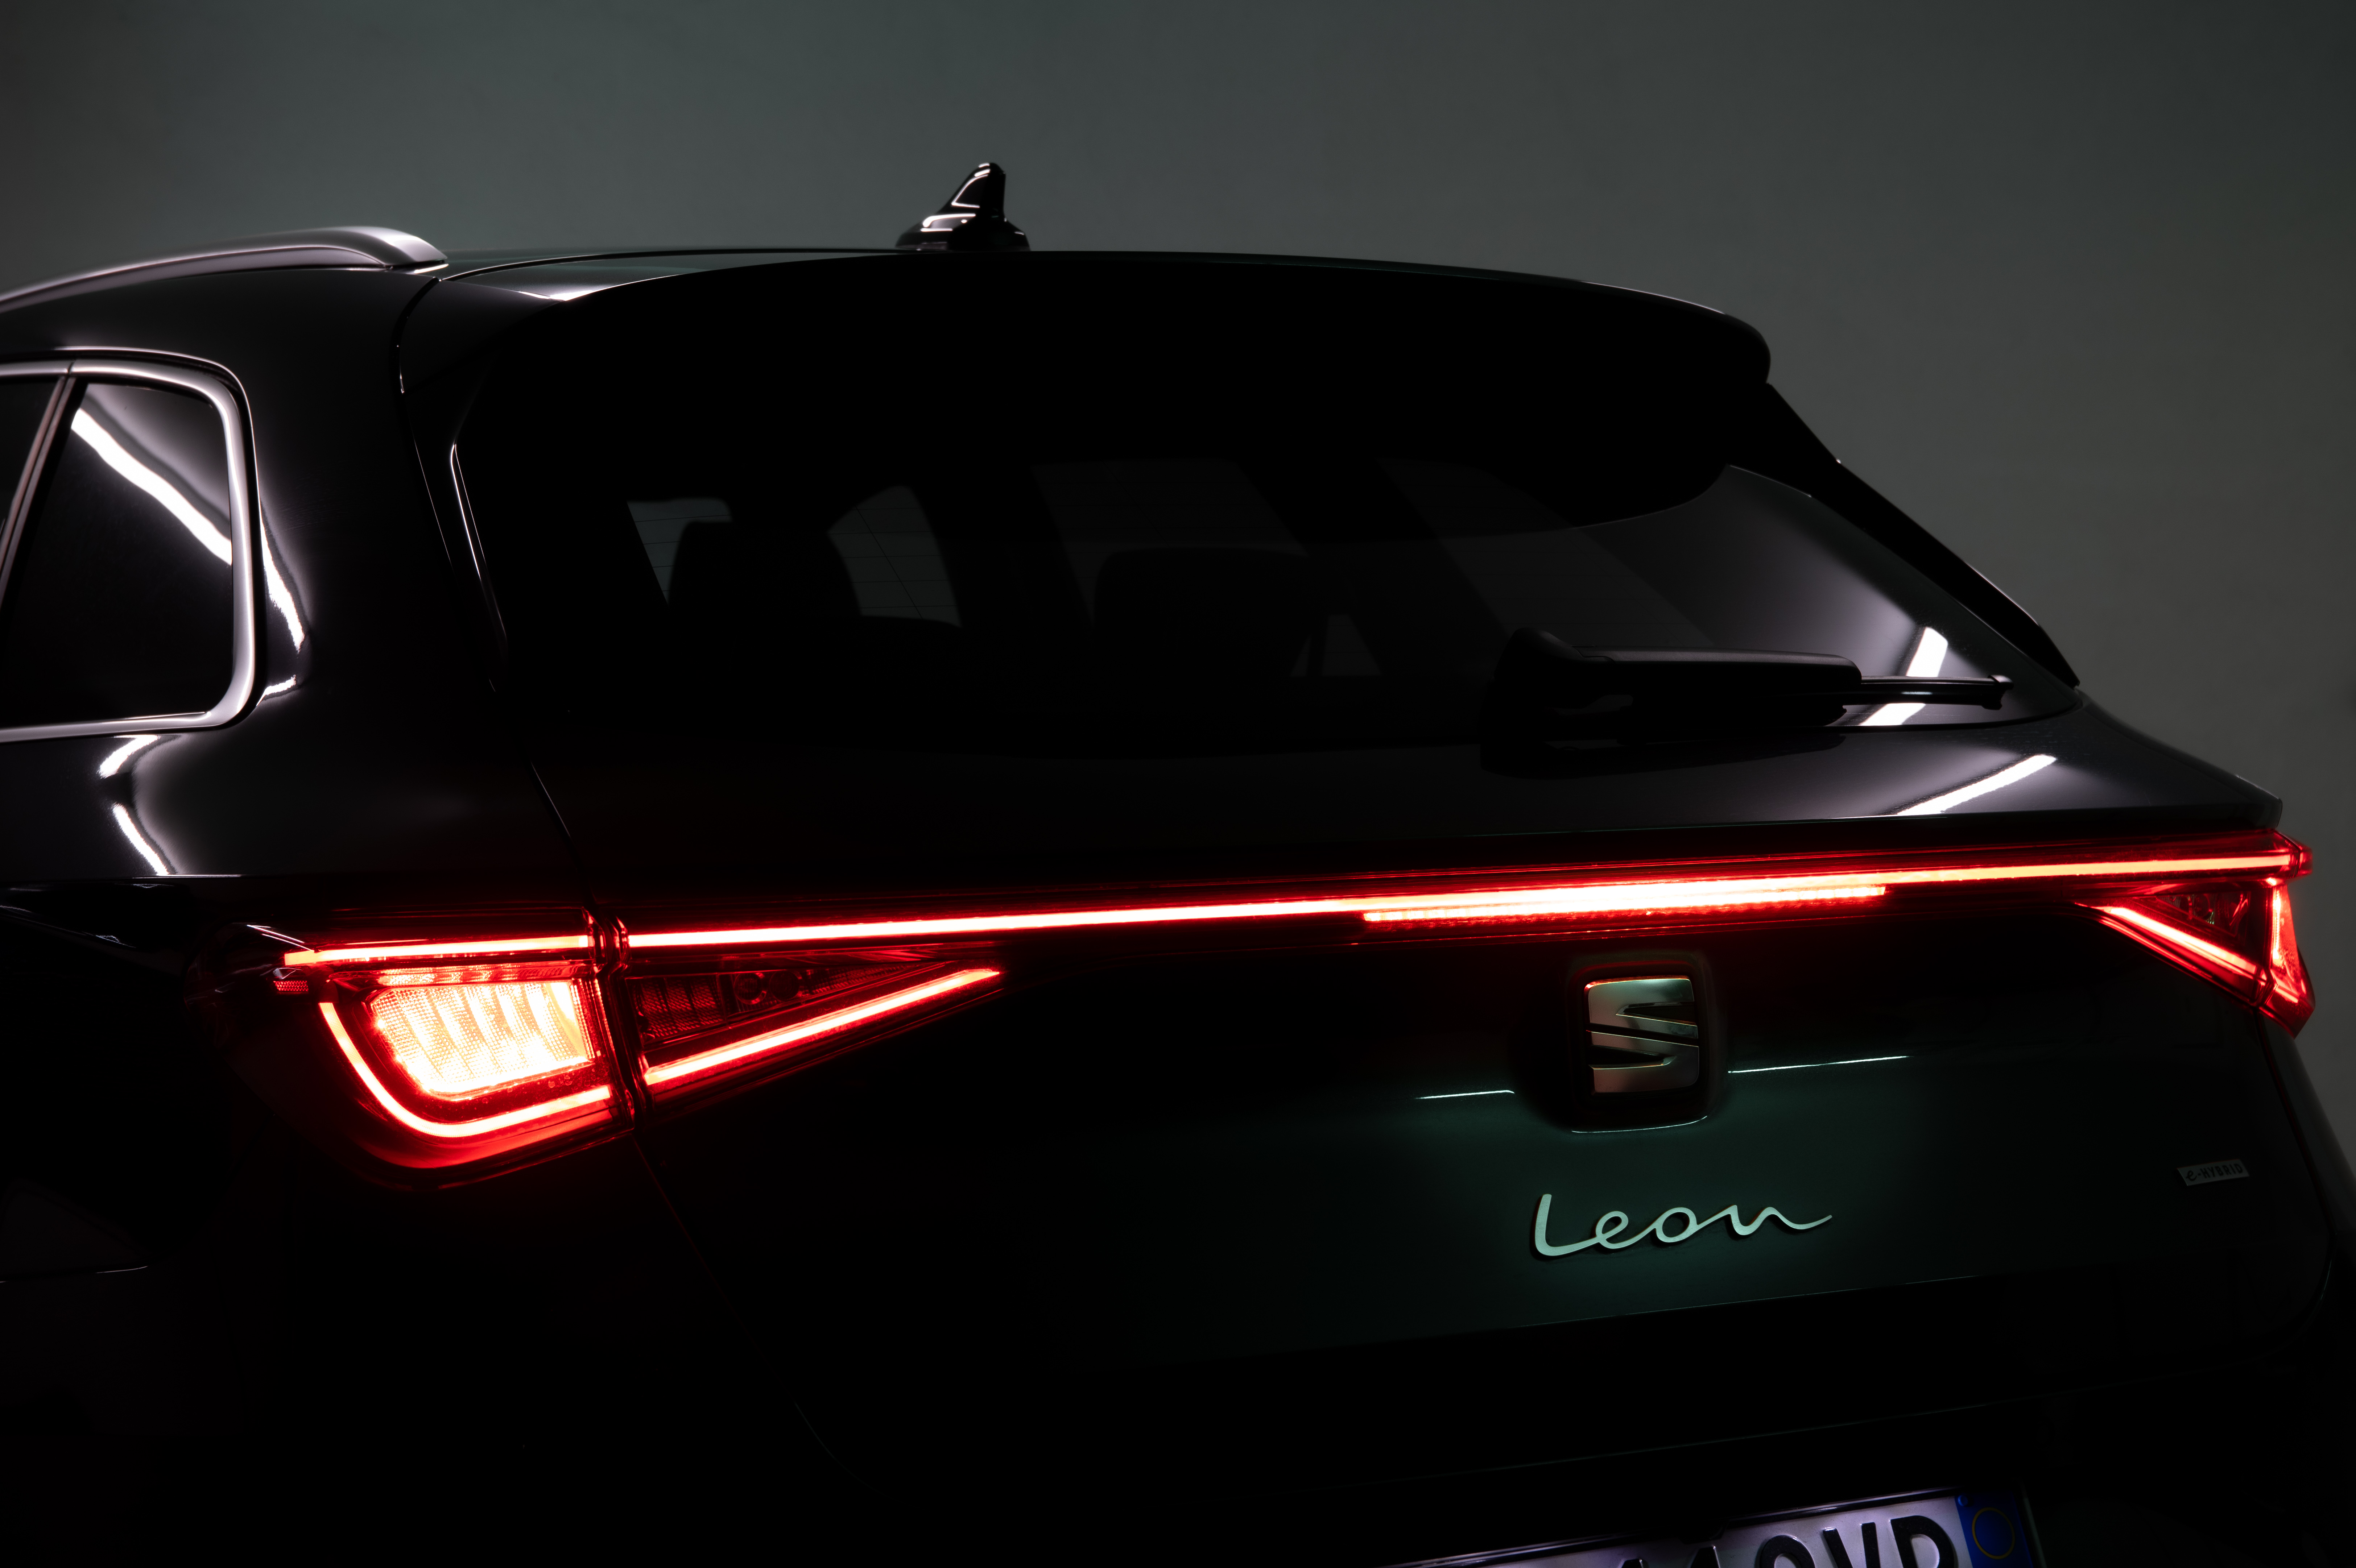 Seat Leon e-hybride